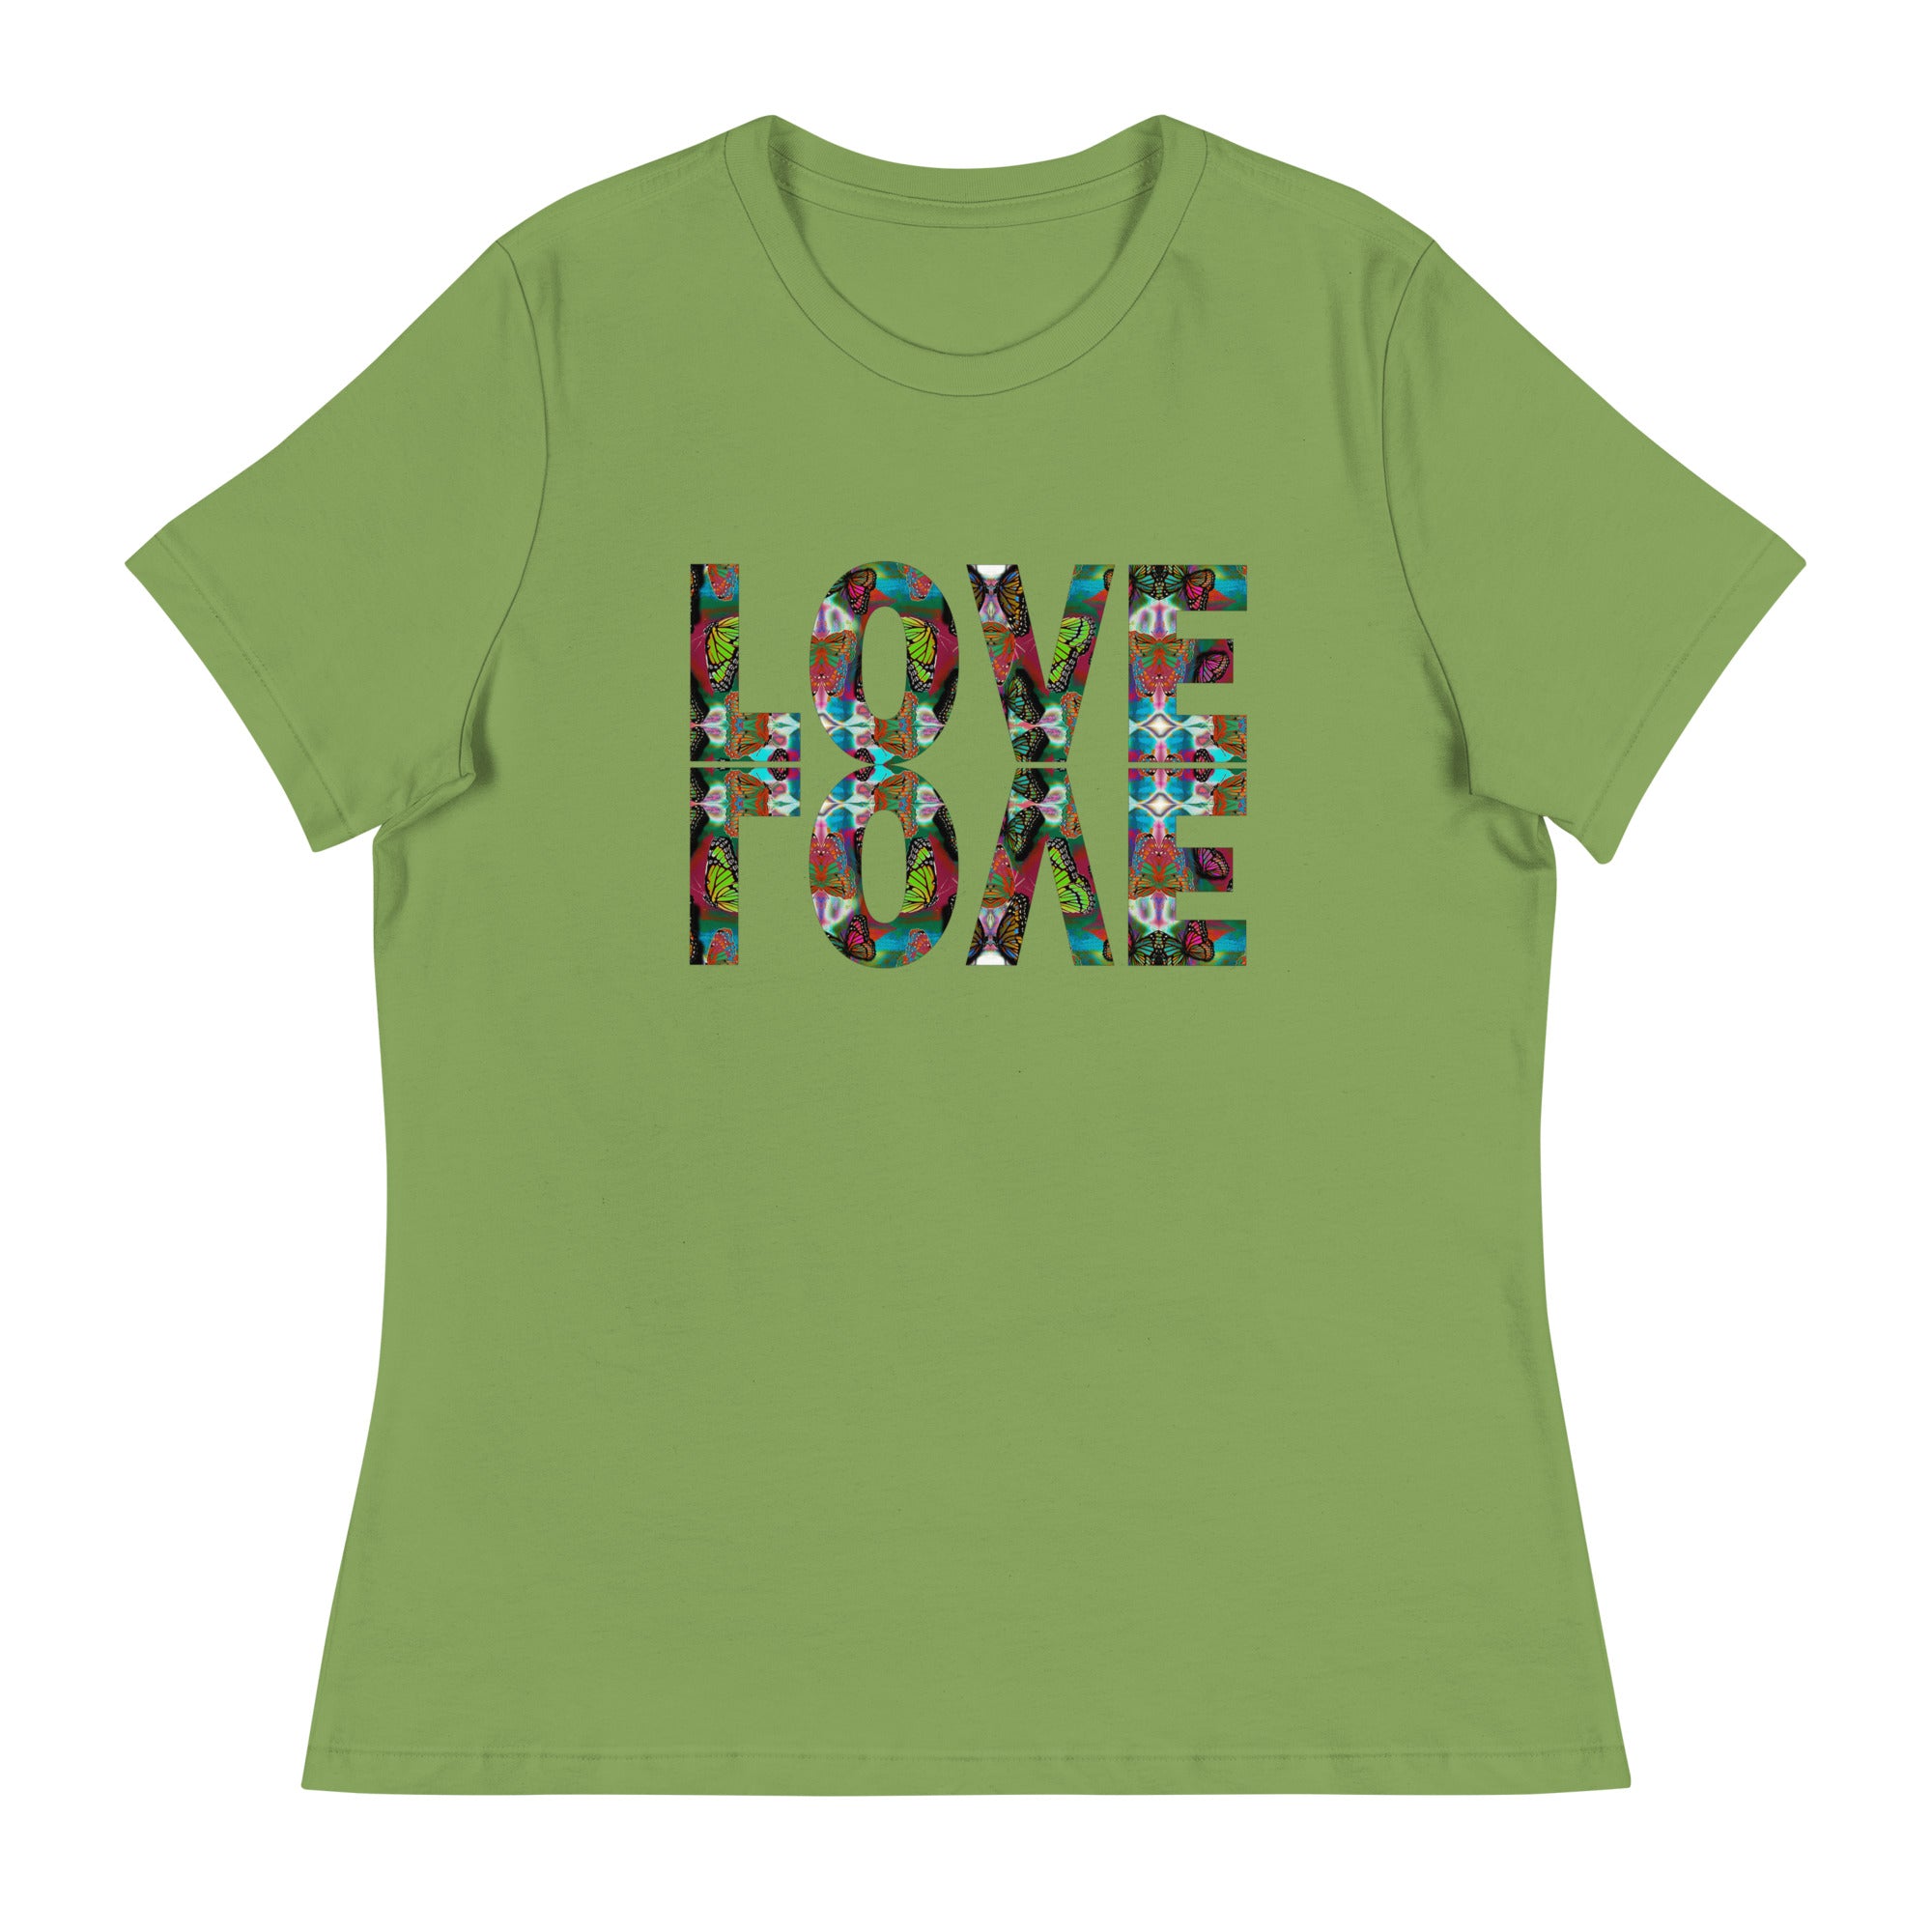 LOVE x 2 ~ Women's Graphic T-Shirt, Butterfly Word Art Short Sleeve Top